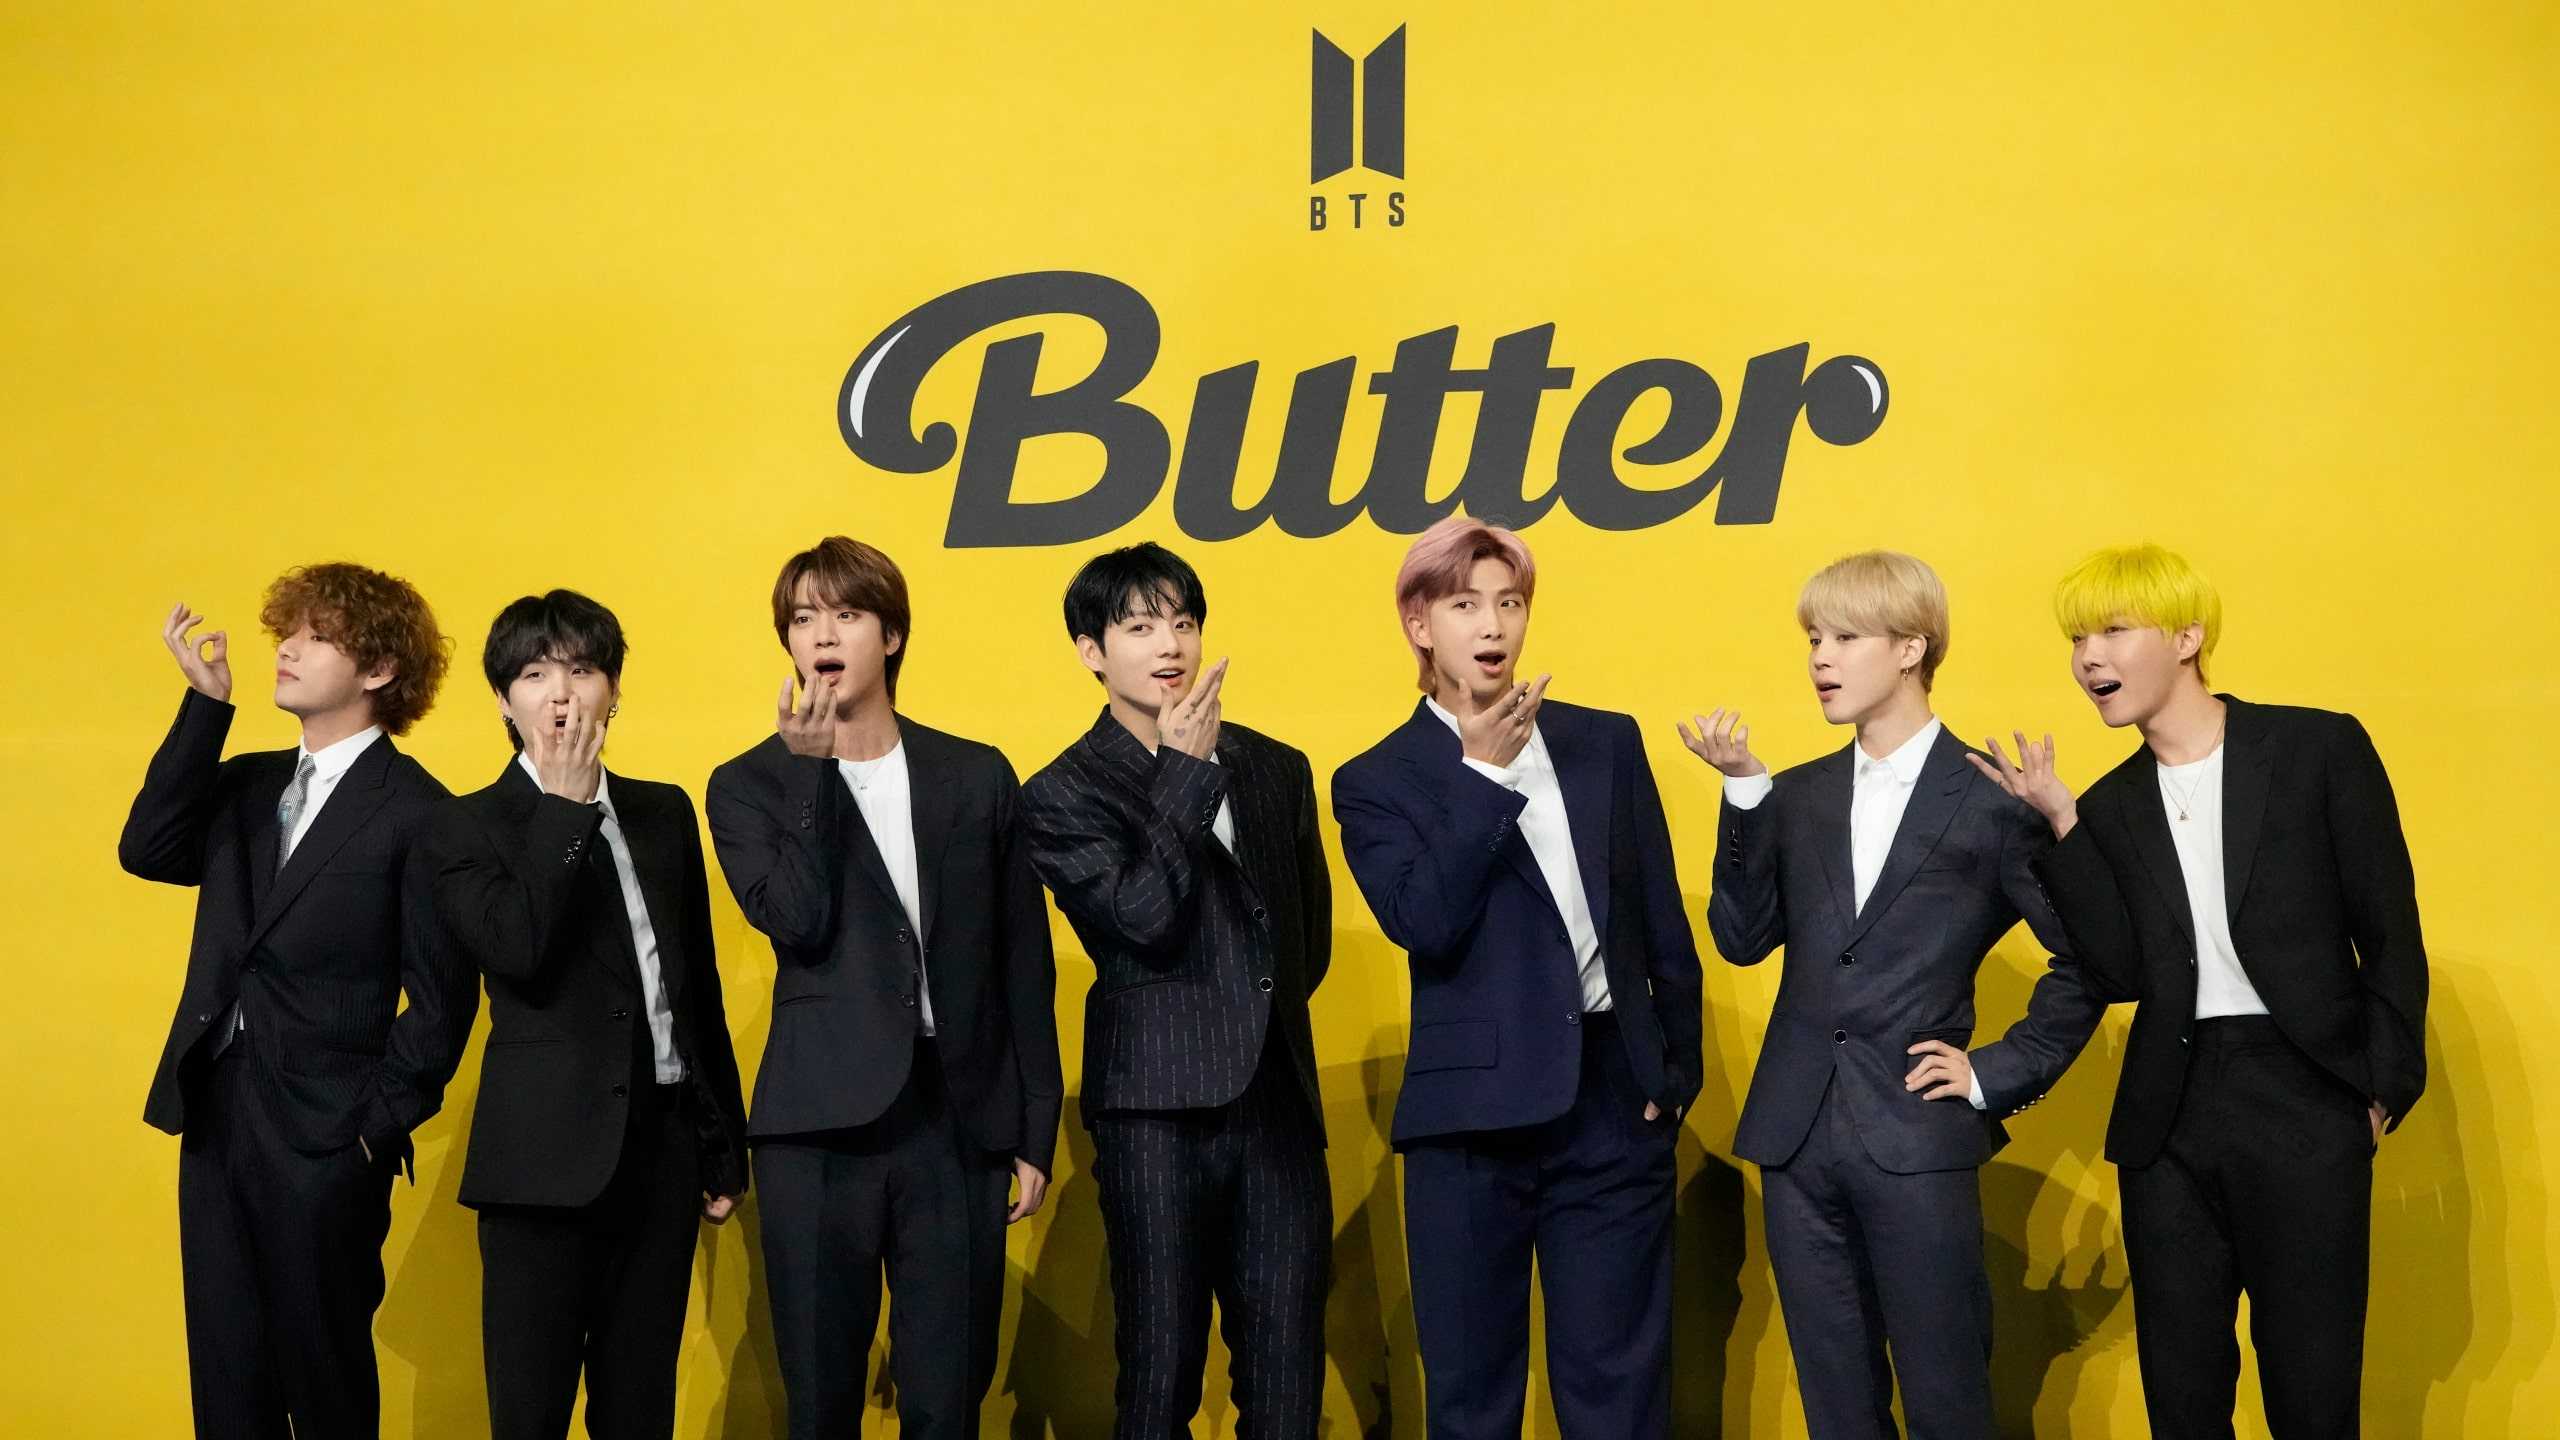 BTS Butter hứa hẹn mang đến một nét mới và tươi mới cho sự nghiệp của BTS. Nghe ca khúc mới nhất của nhóm điện tử K-pop số 1 thế giới và cảm nhận năng lượng và hứng khởi mà nó đem lại. Chắc chắn rằng bạn sẽ không hối tiếc khi tìm hiểu thêm về BTS Butter.